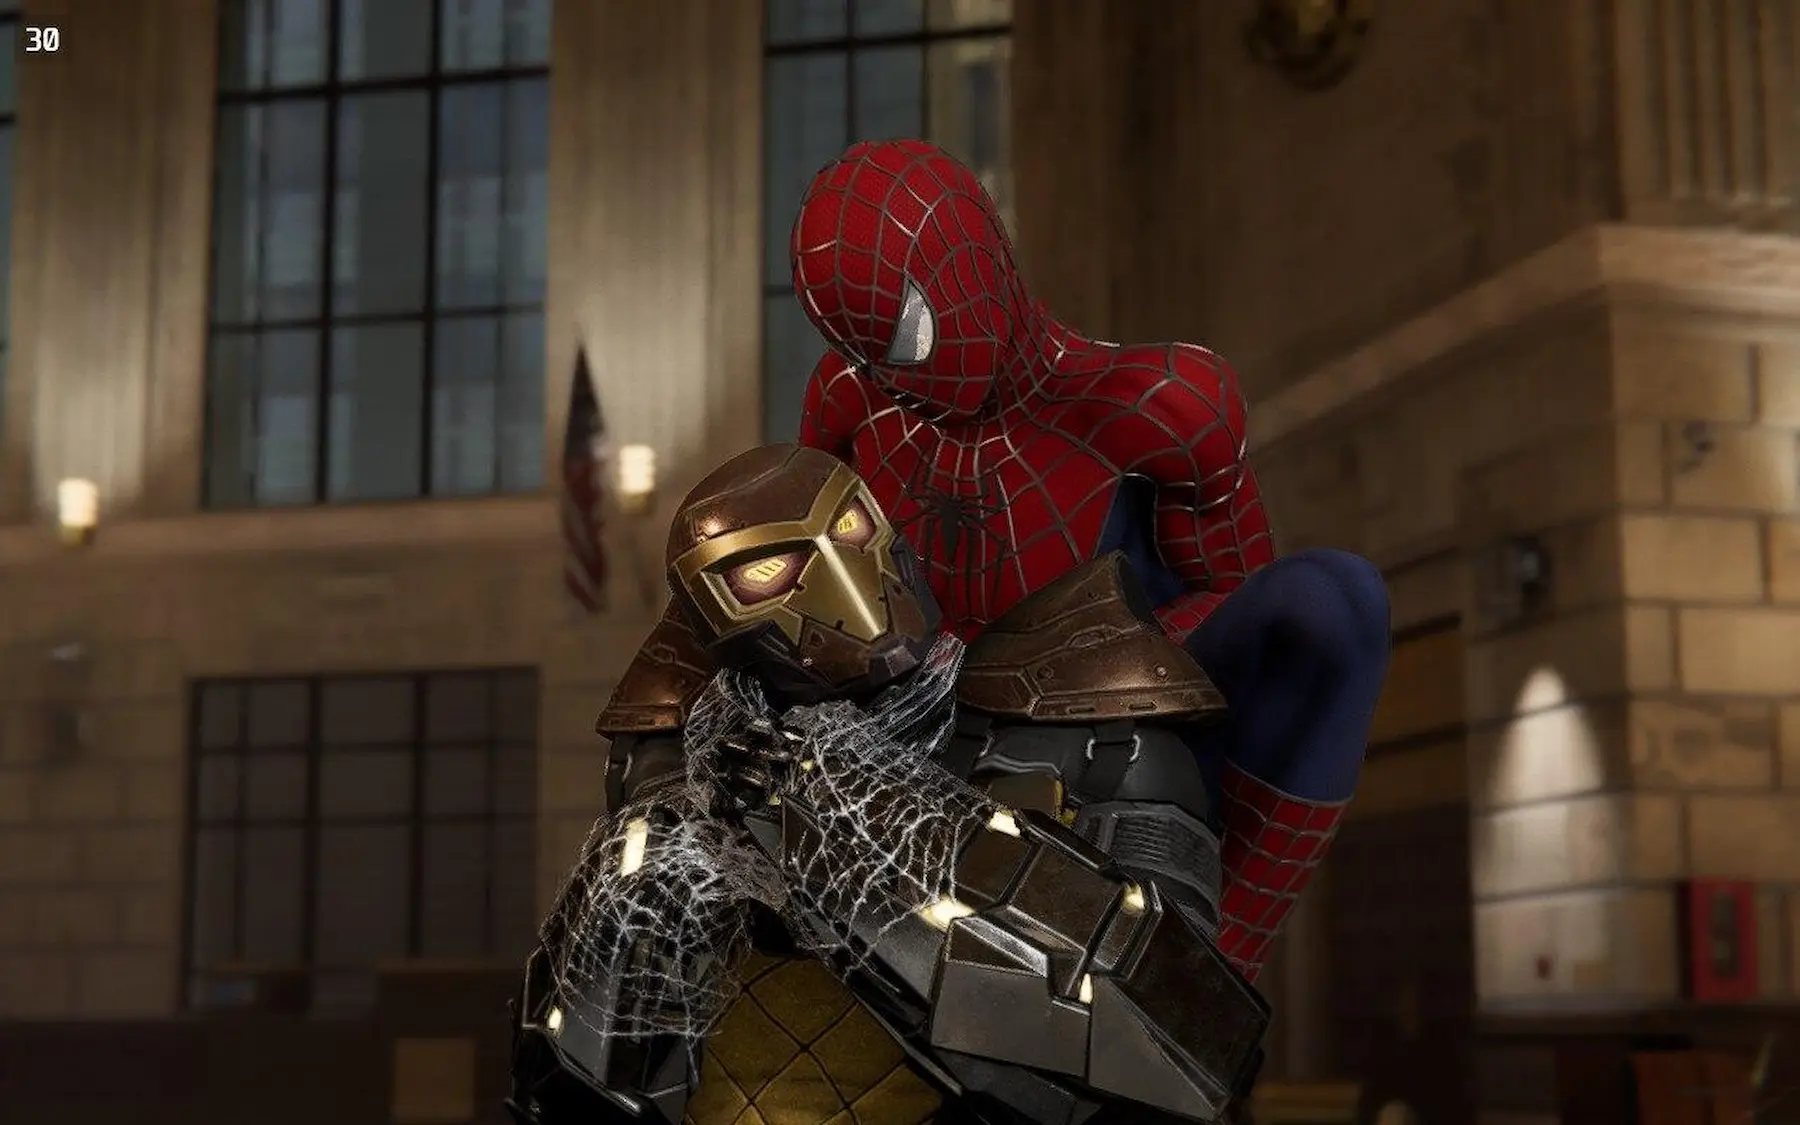 Spider-Man de PC sufres caídas de FPS, si es tu caso echa un vistazo a esto  - GuiltyBit